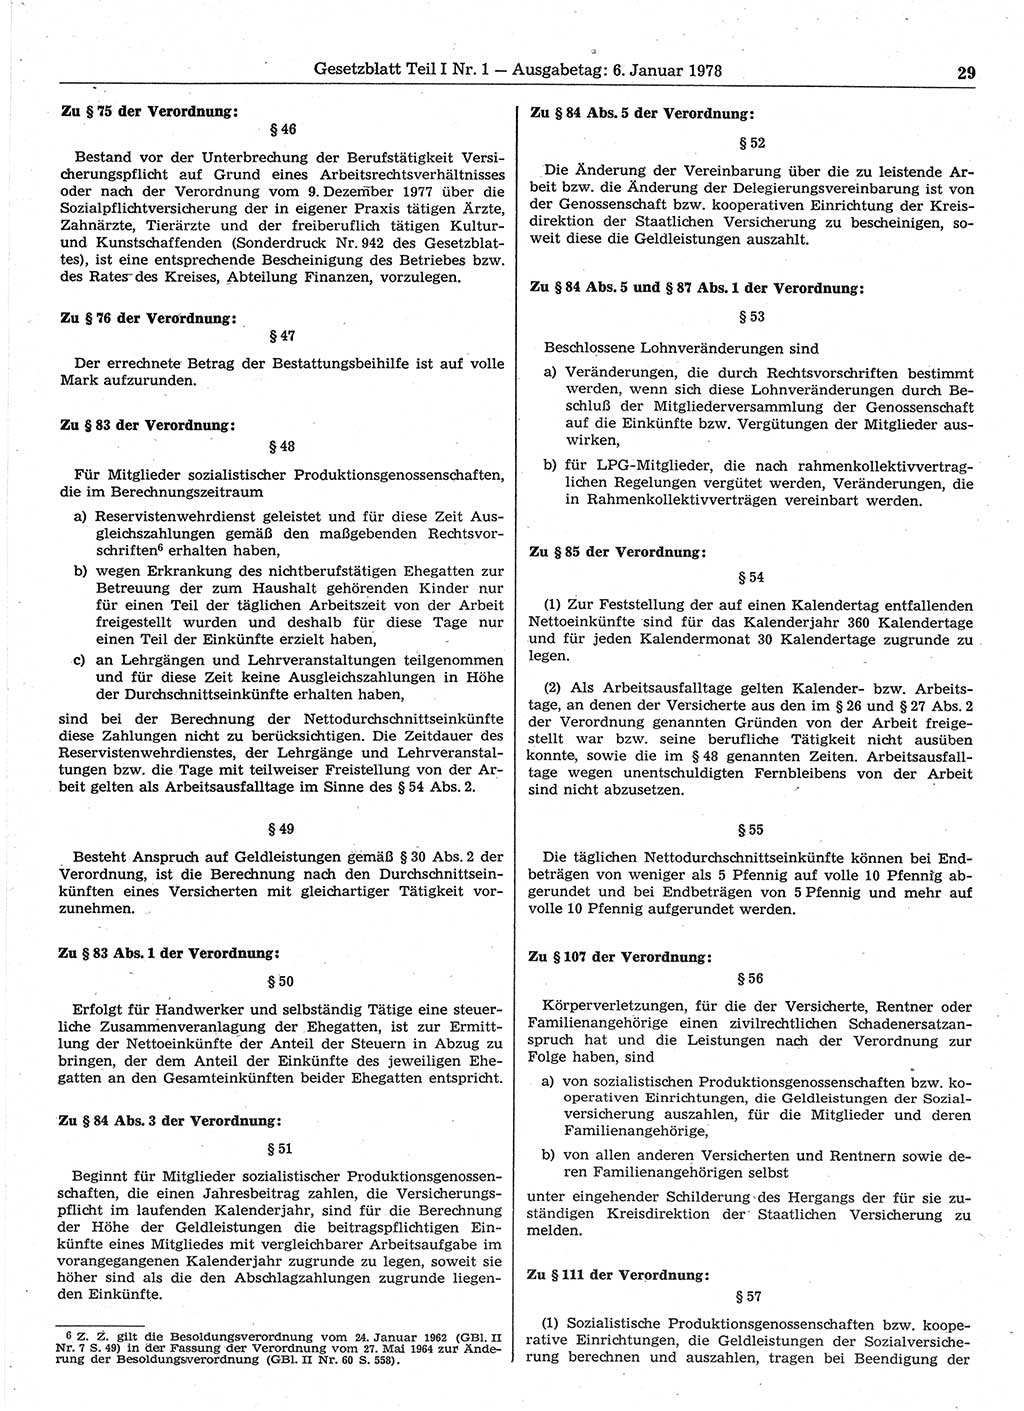 Gesetzblatt (GBl.) der Deutschen Demokratischen Republik (DDR) Teil Ⅰ 1978, Seite 29 (GBl. DDR Ⅰ 1978, S. 29)